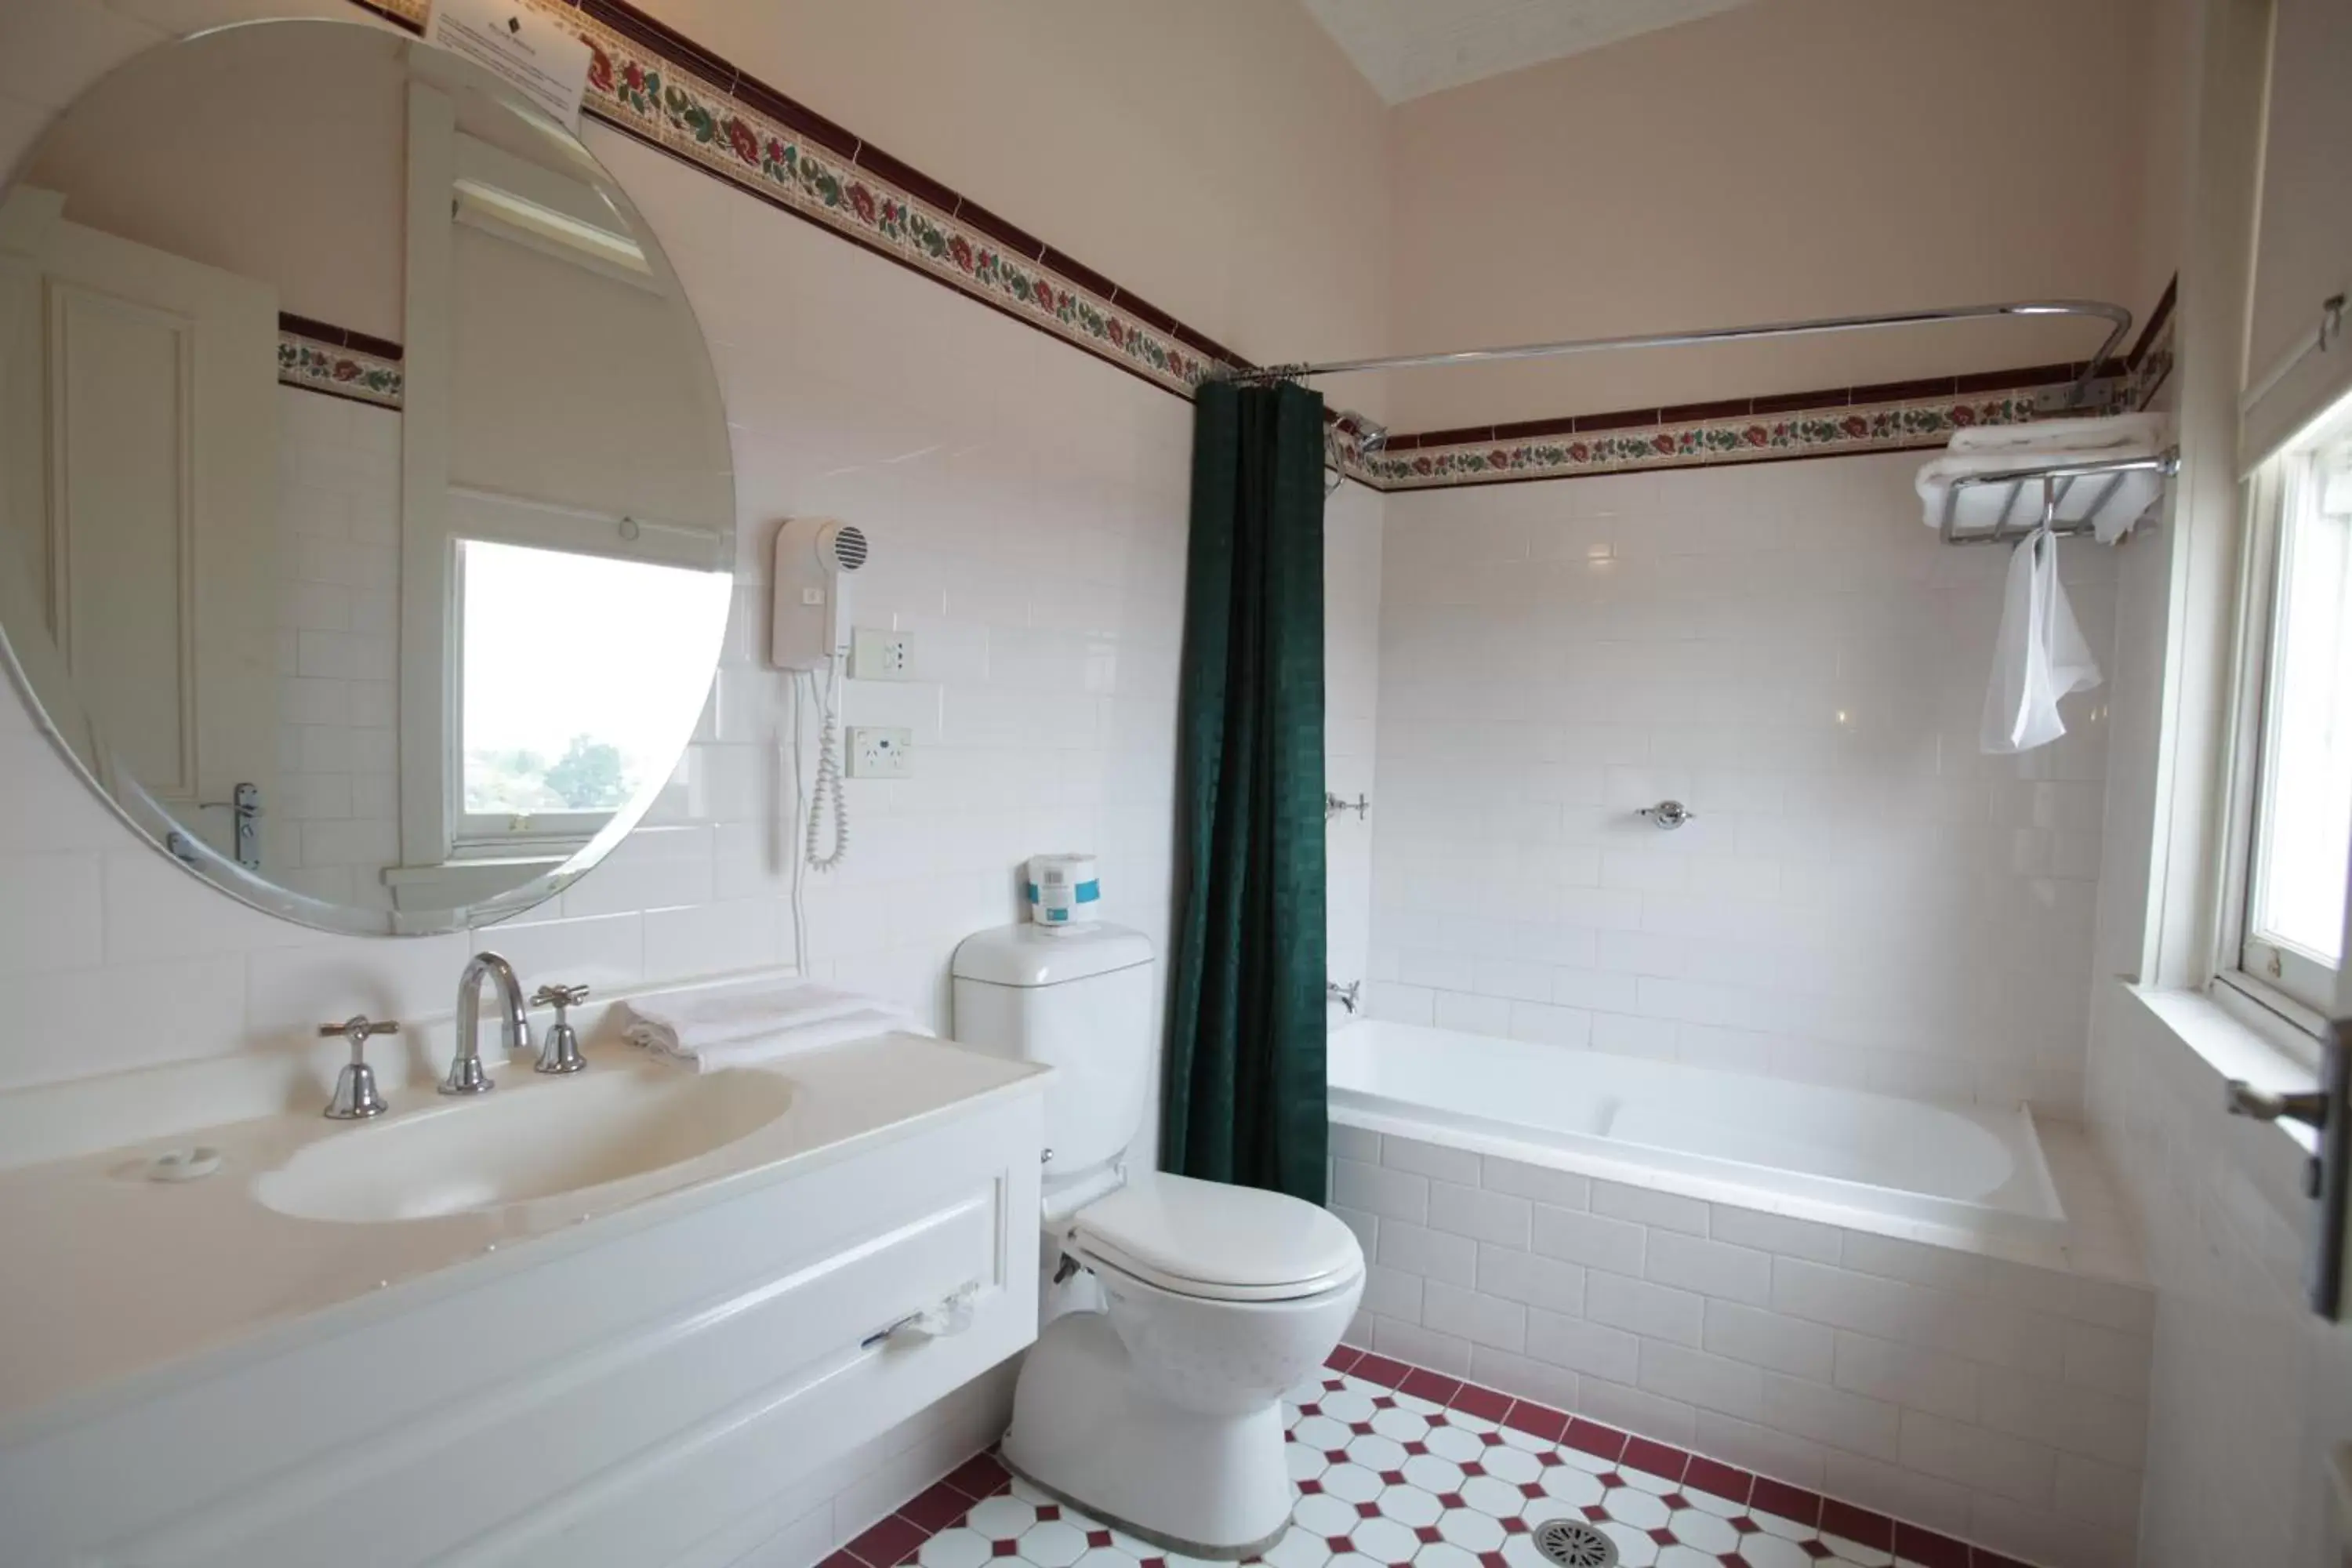 Bathroom in Palais Royale